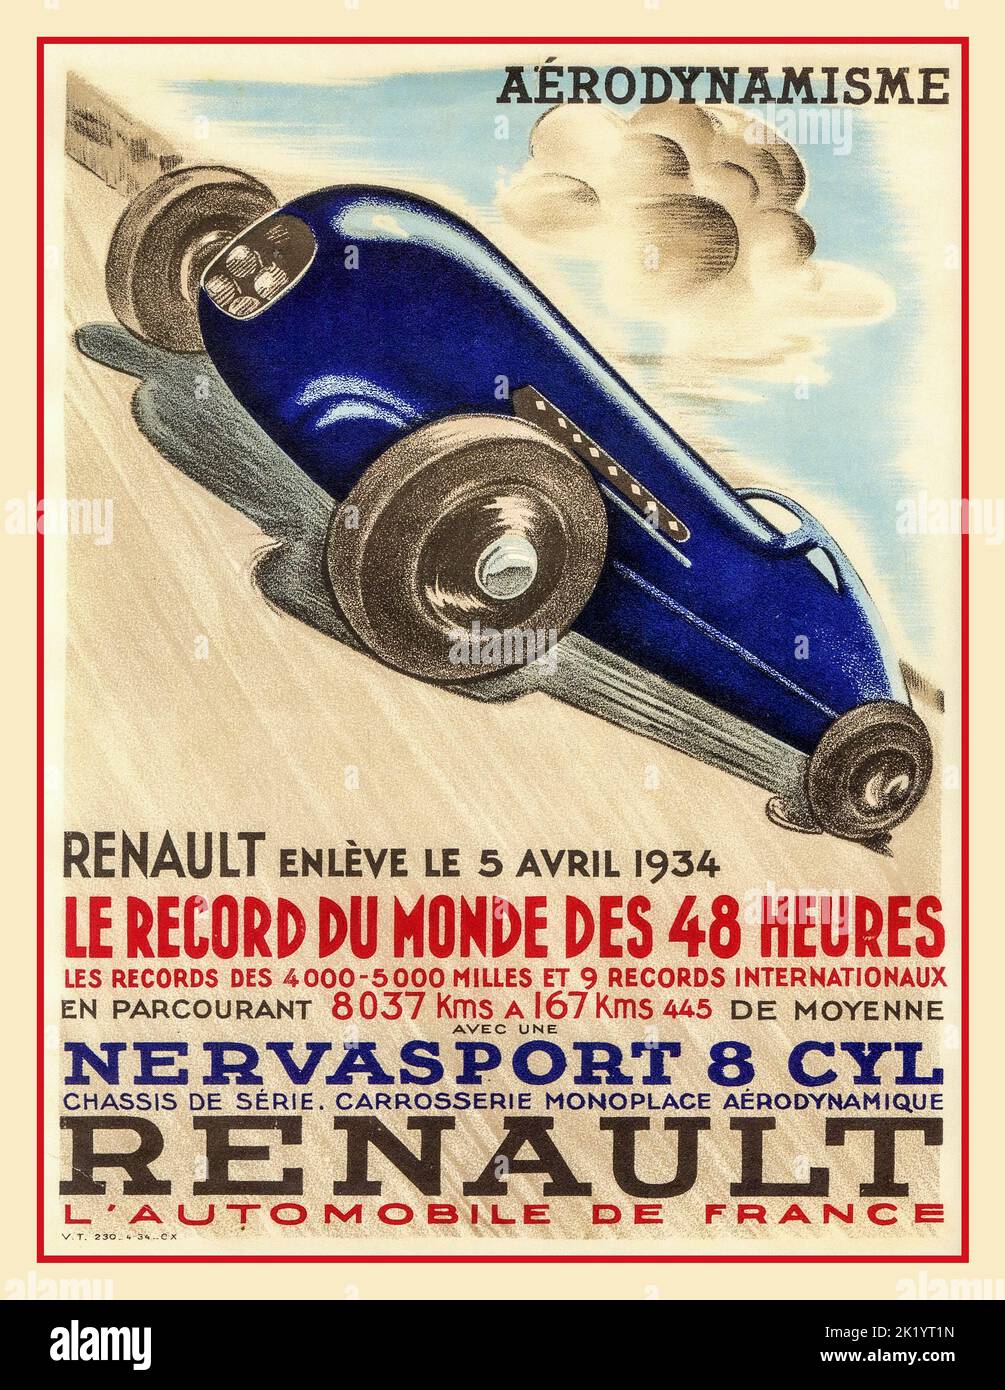 1934 Renault Vintage Motor Racing Sport Poster Le Record de Monde des 48 Heures 'NERVASPORT 8cyl RENAULT Aerodynamisme April 1934 Stockfoto